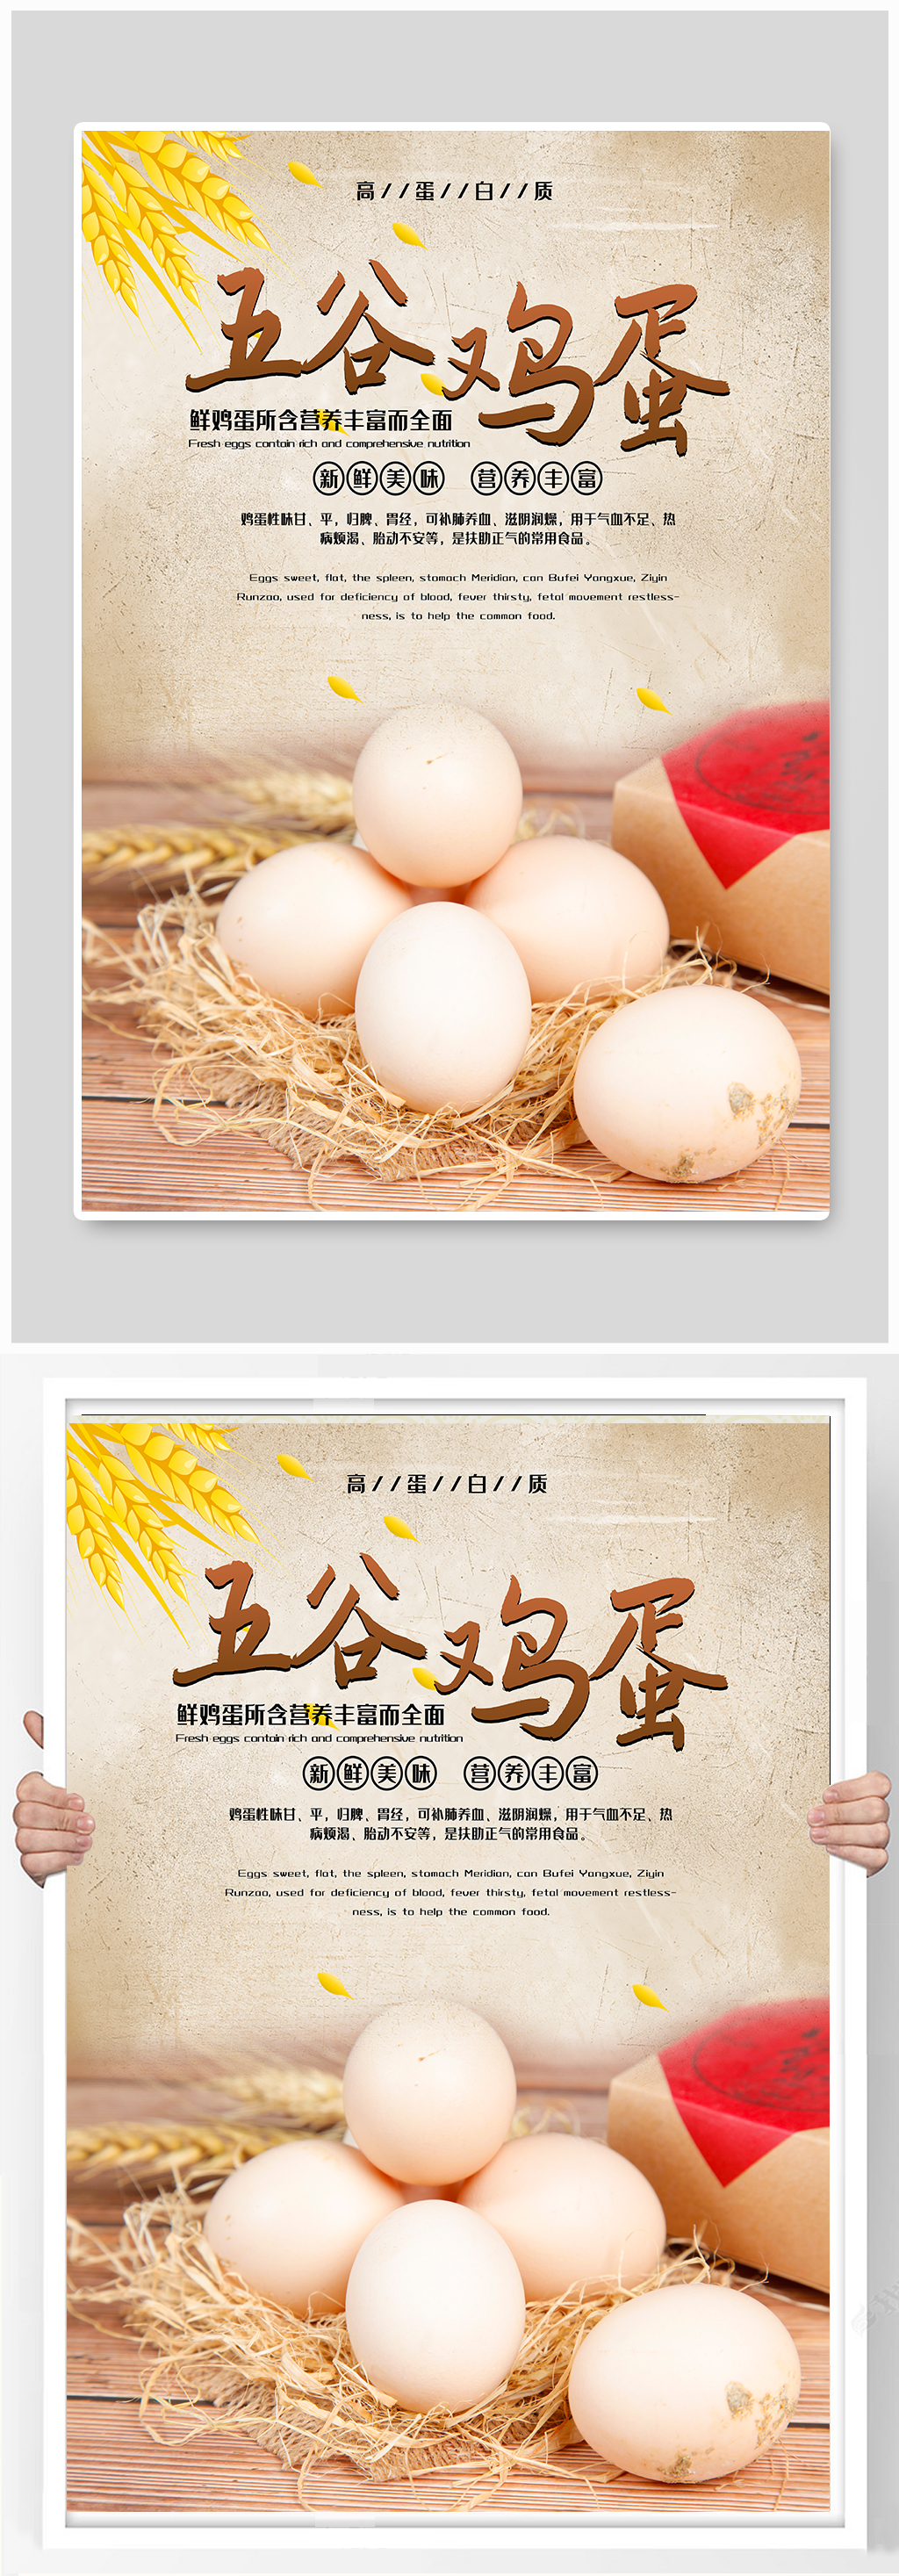 土鸡蛋海报素材免费下载,本作品是由xiaopeng001上传的原创平面广告